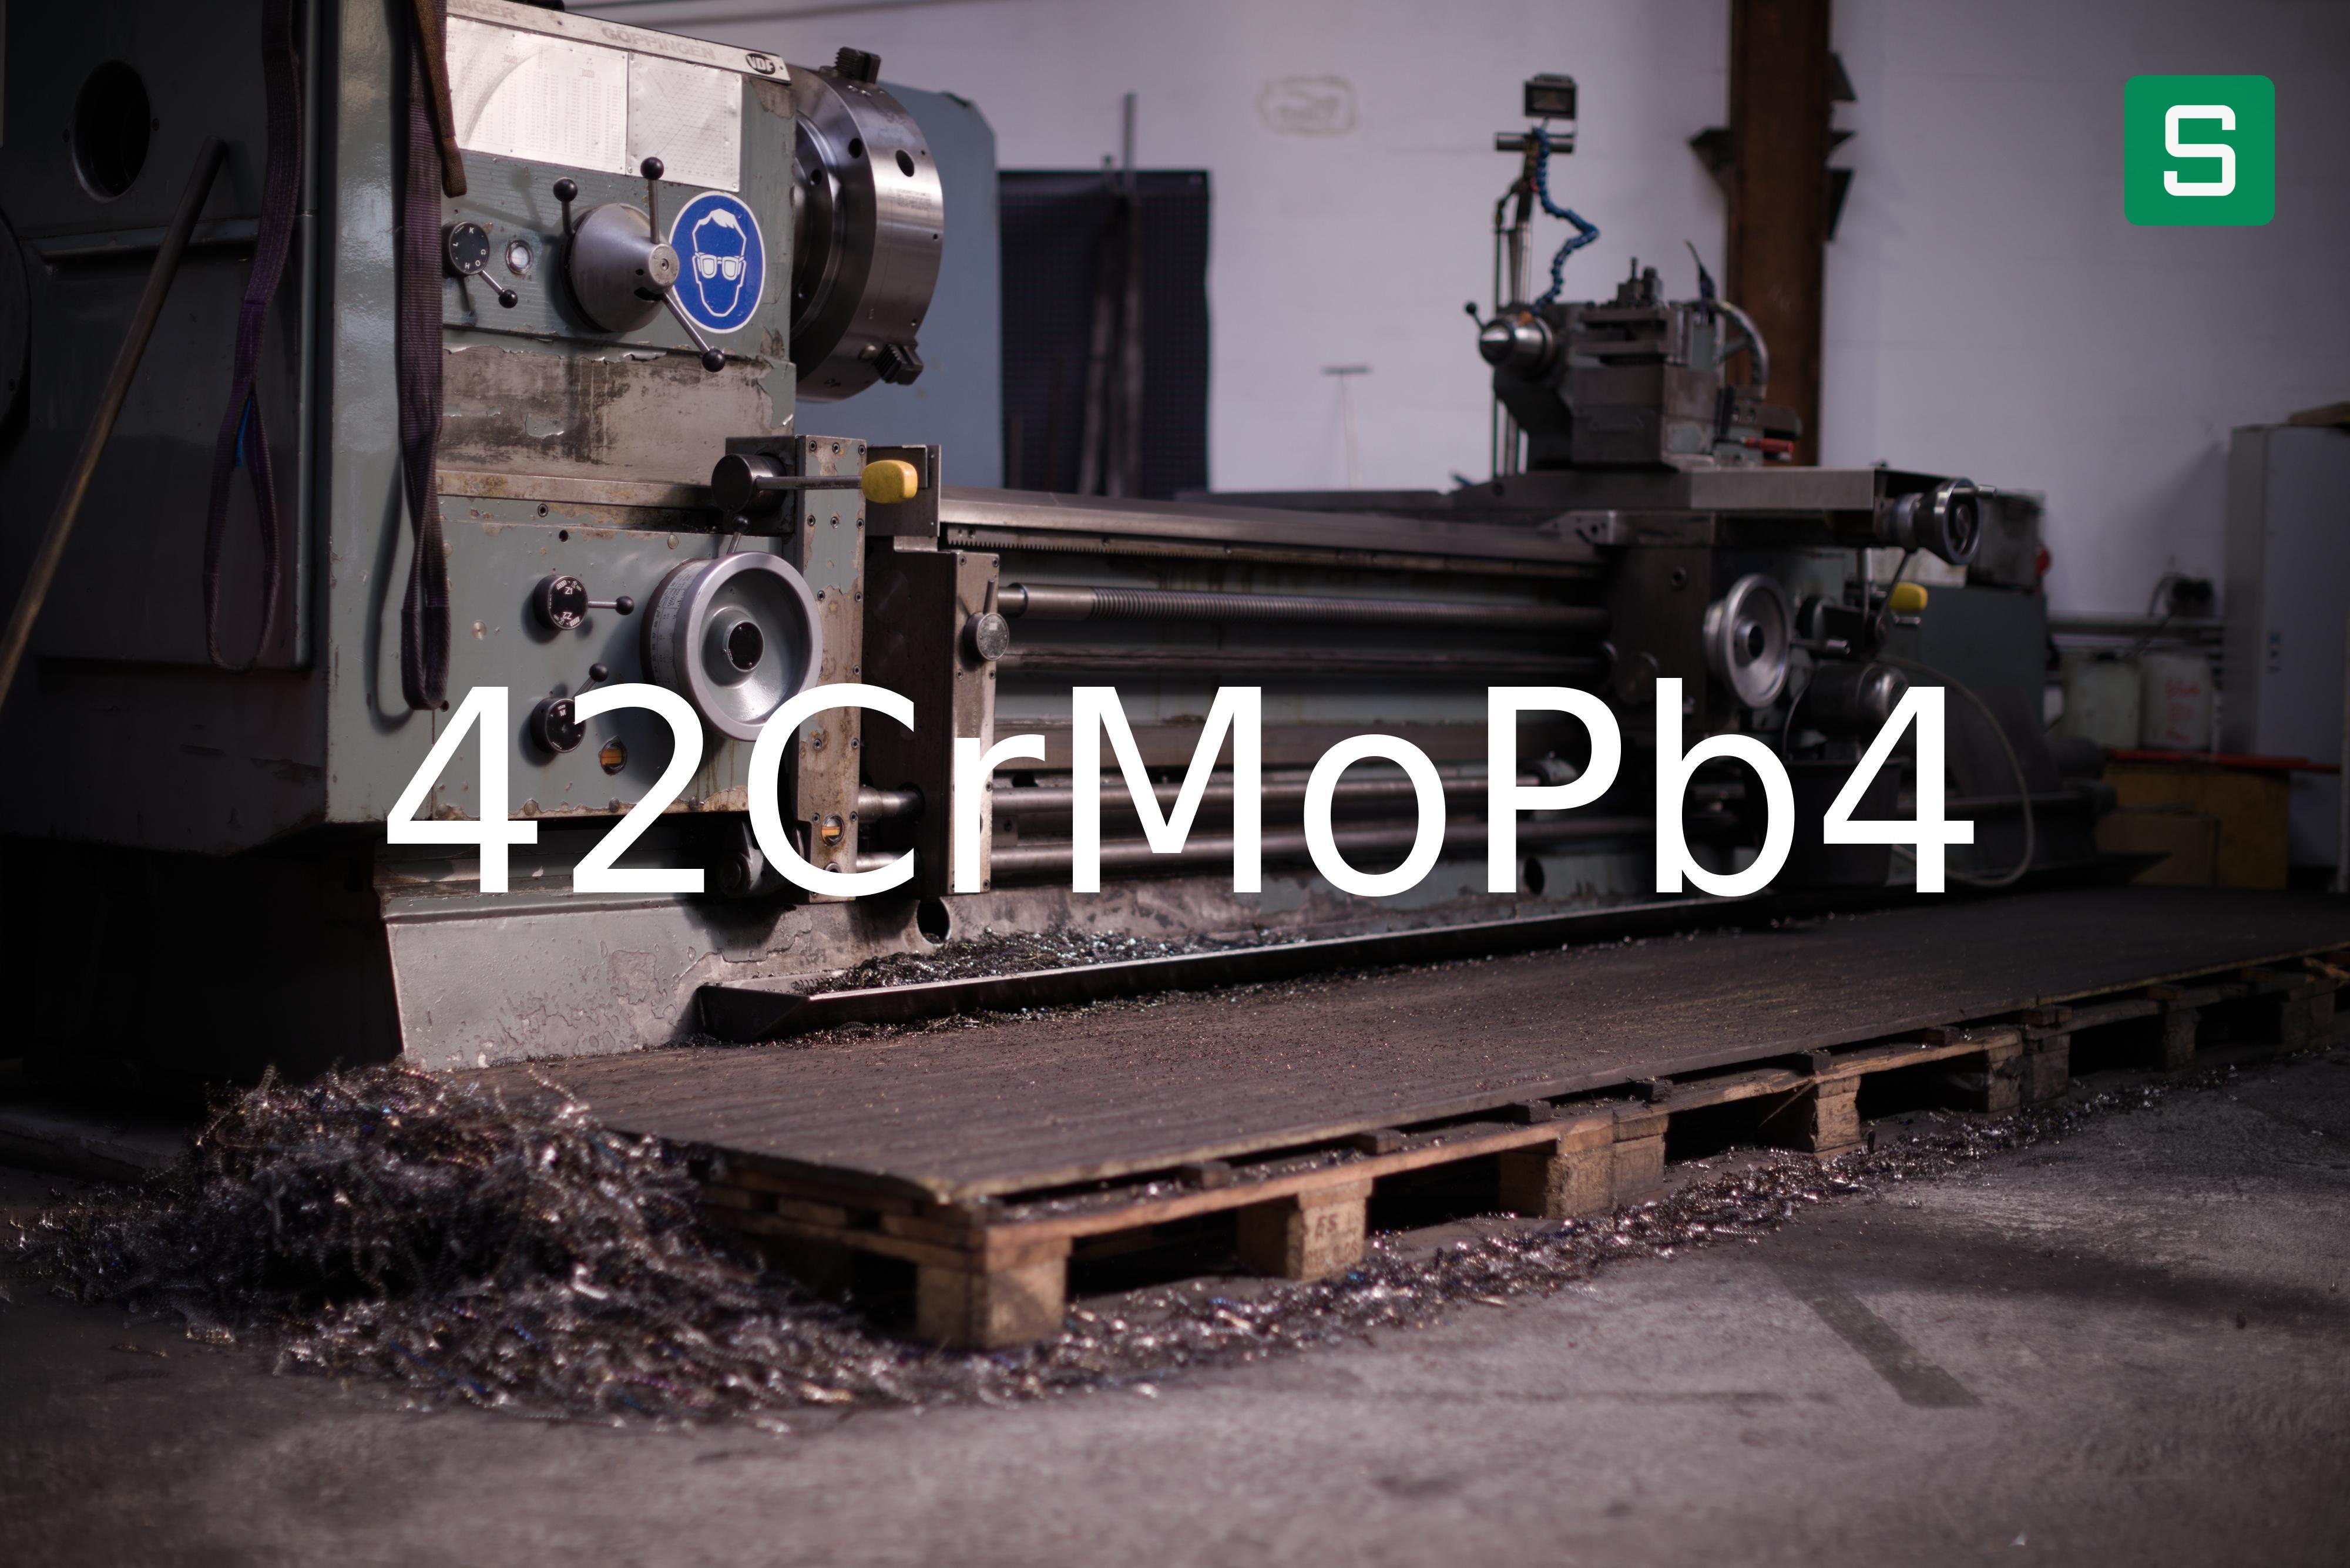 Steel Material: 42CrMoPb4